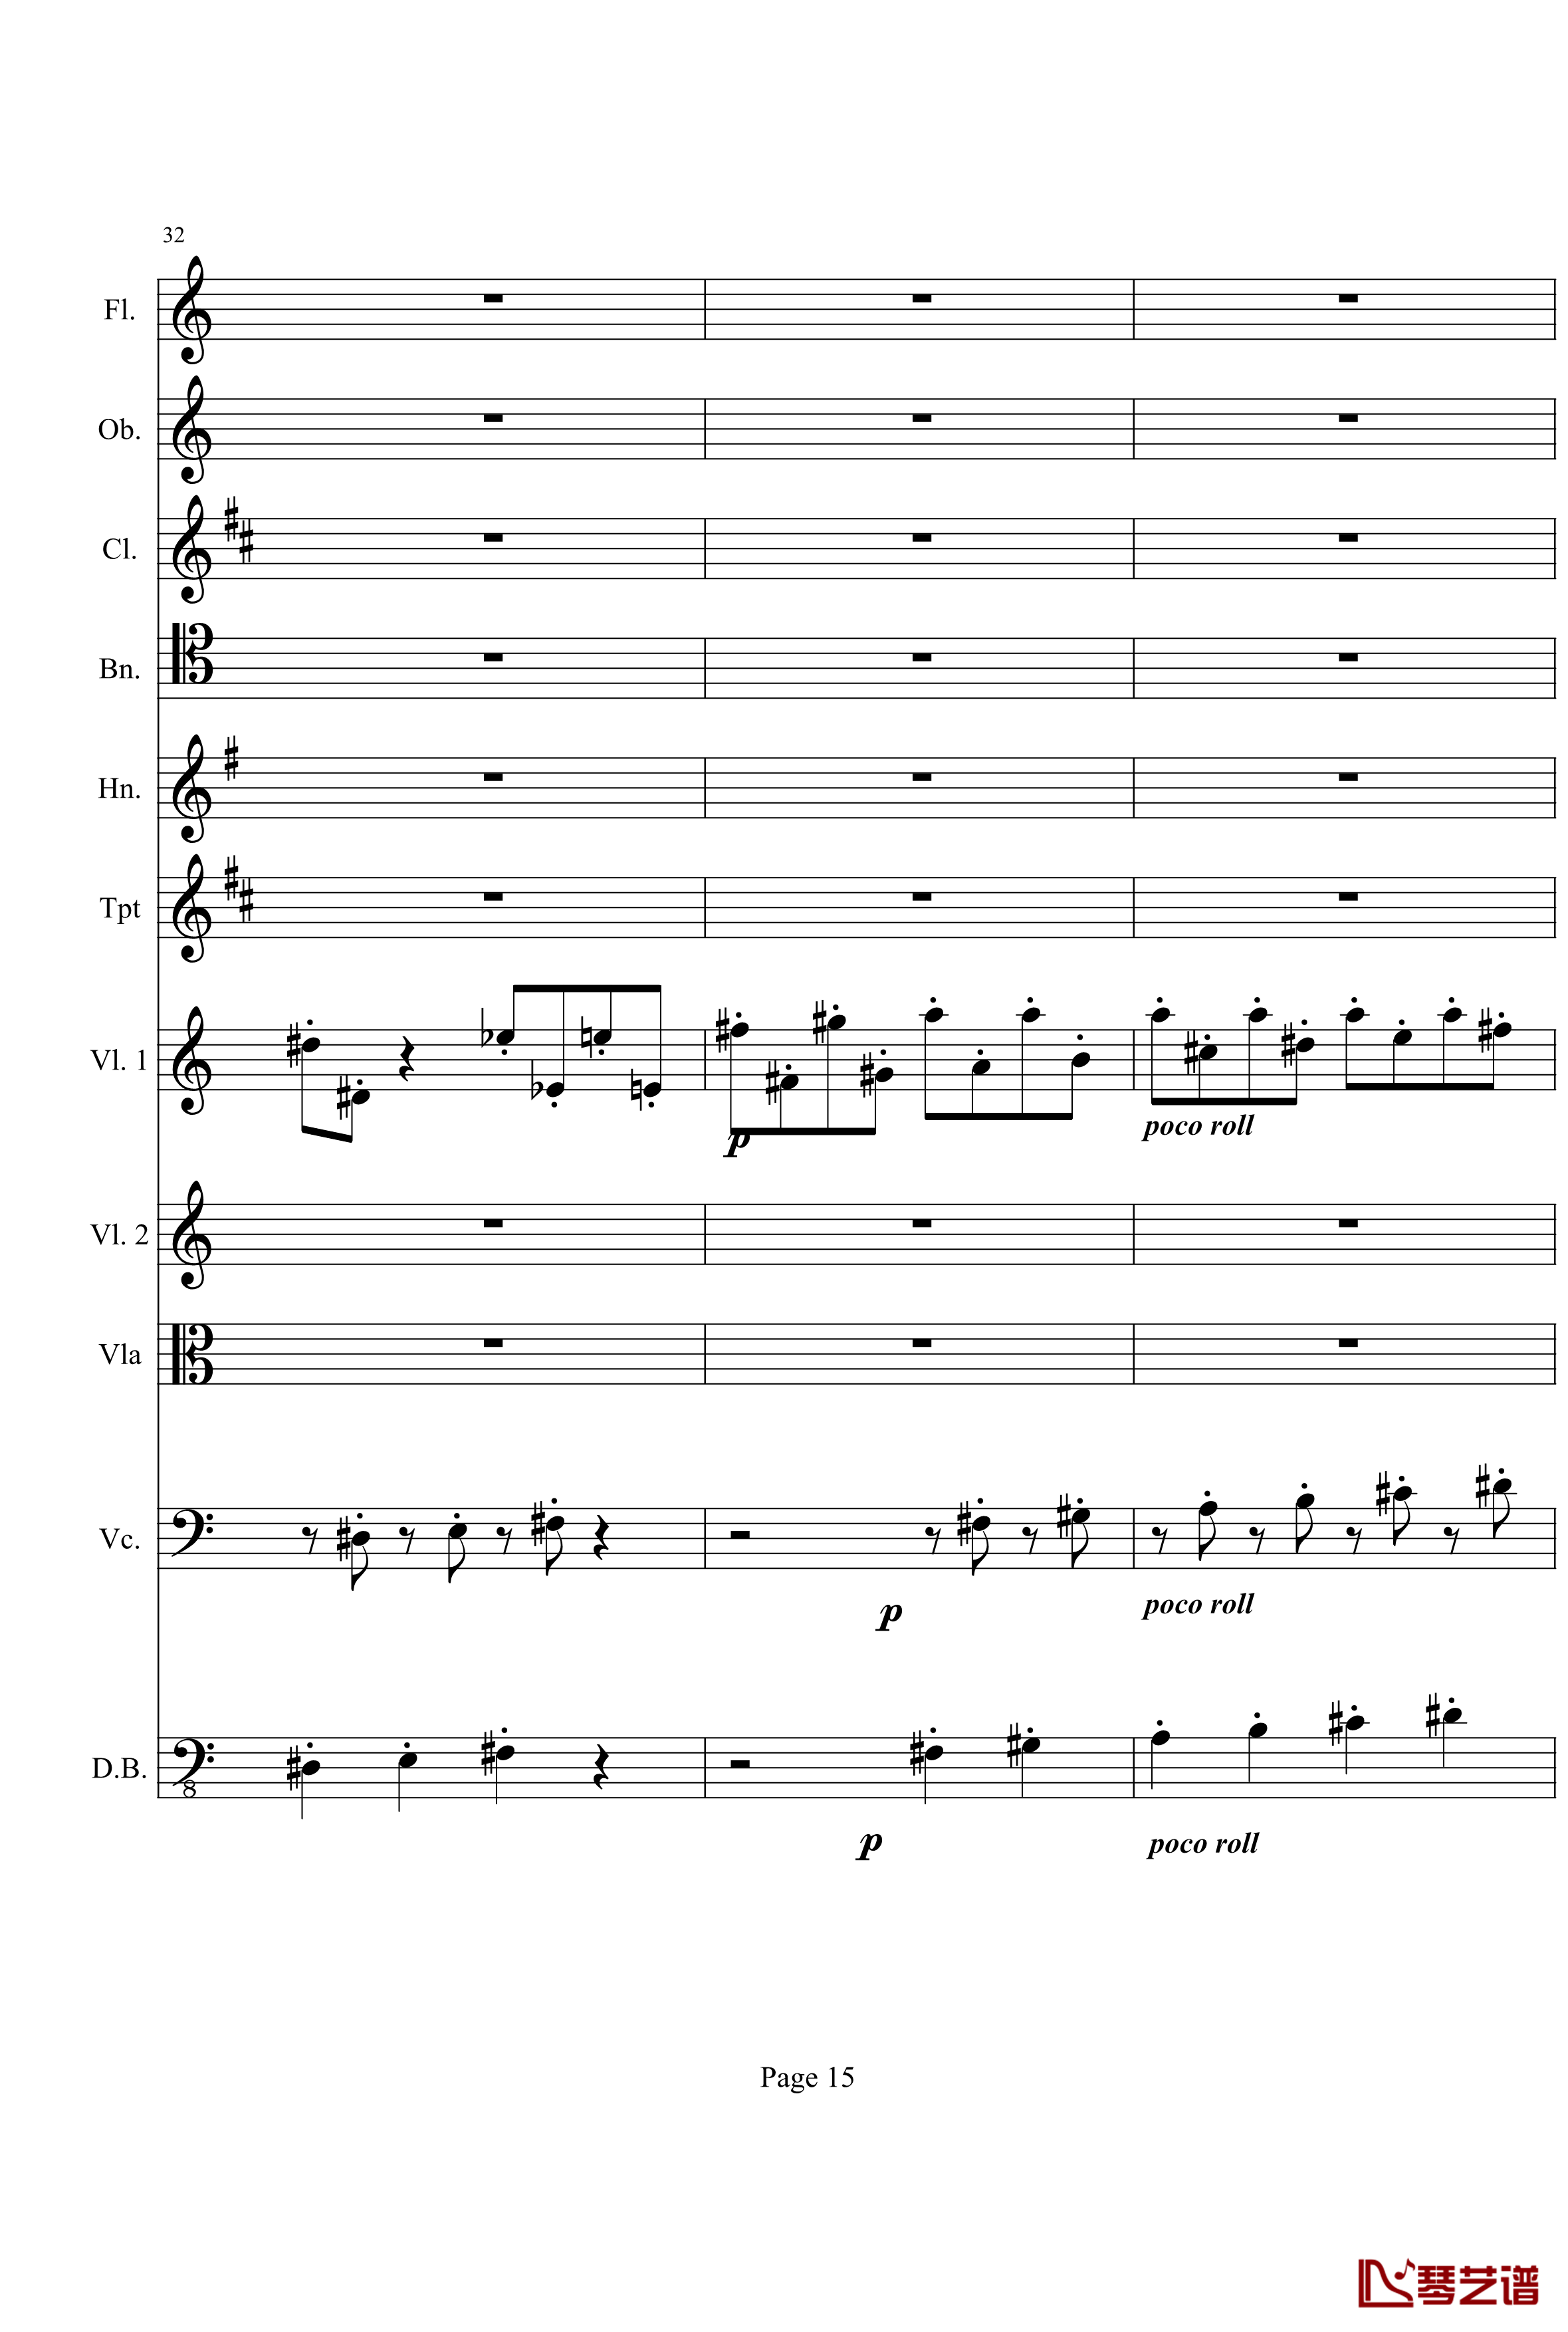 奏鸣曲之交响钢琴谱-第21首-Ⅰ-贝多芬-beethoven15